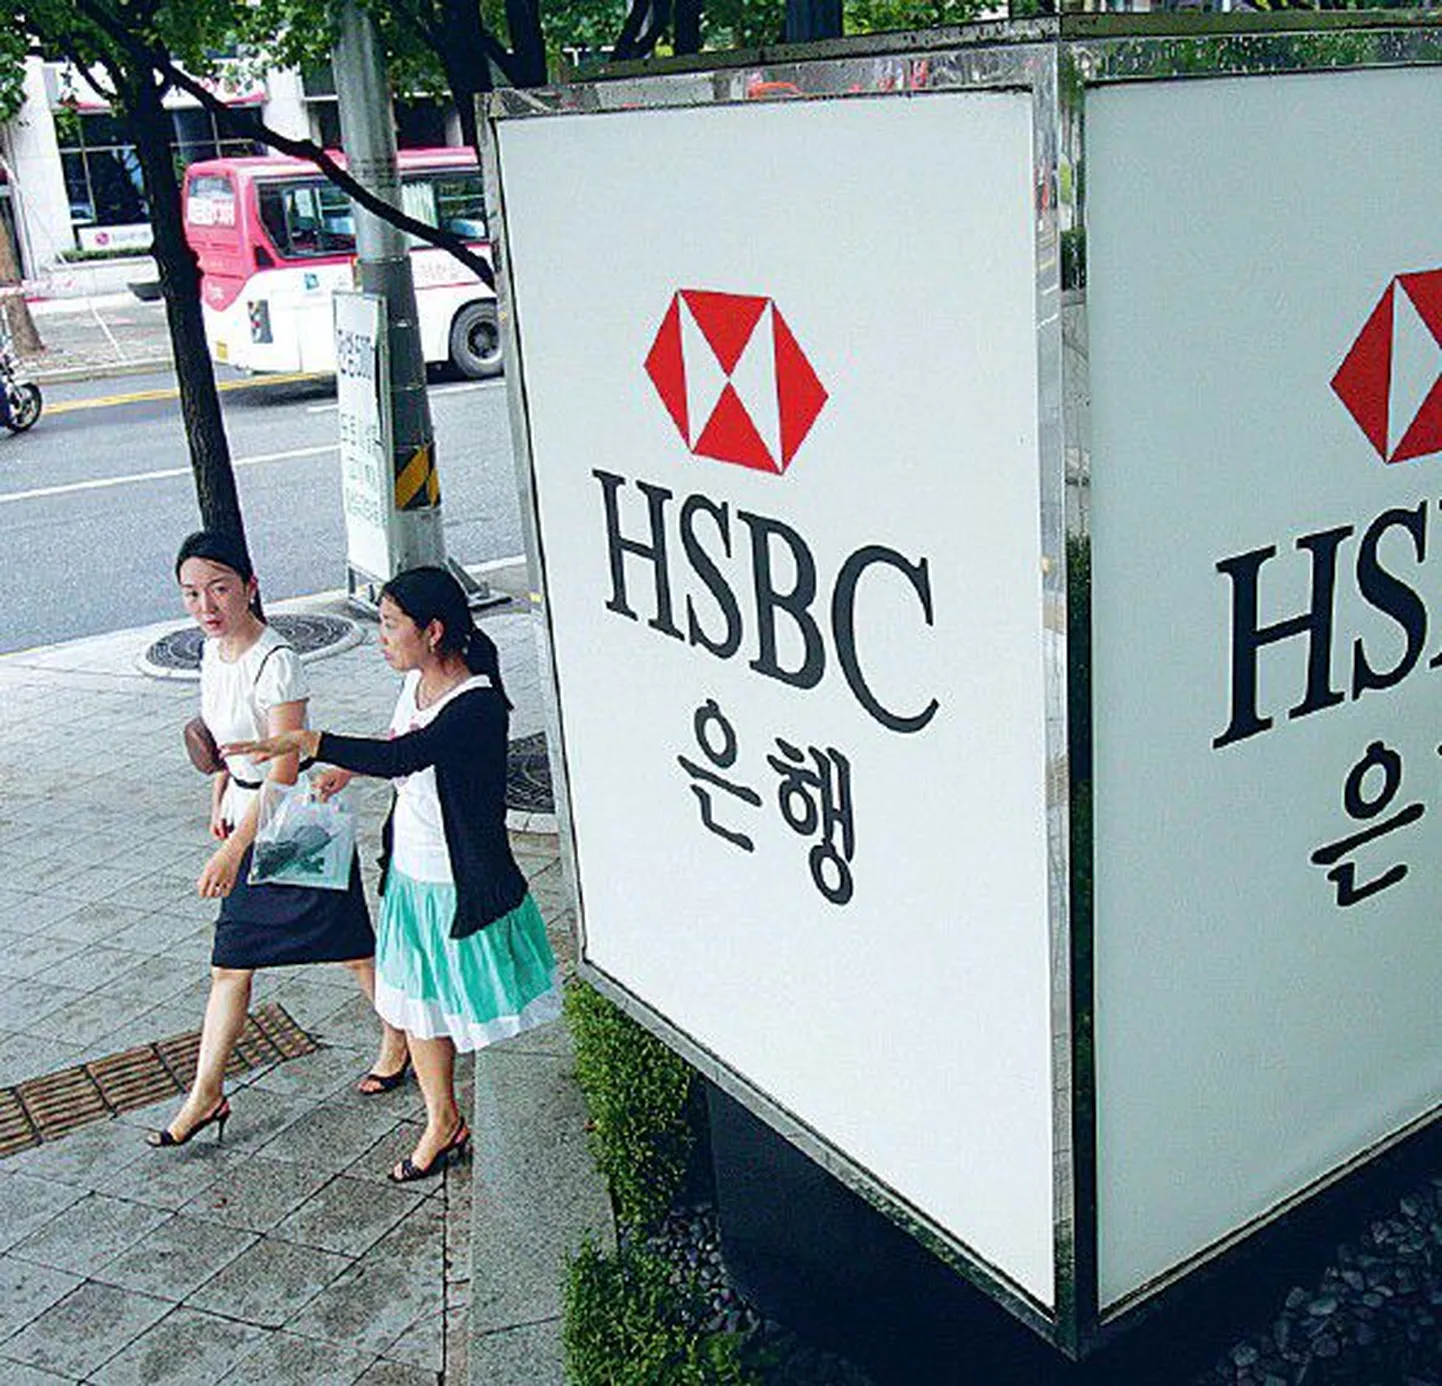 HSBC on üks maailma suurimaid pankasid, mis varemgi röövlite ohvriks langenud, viimati selle aasta jaanuaris.